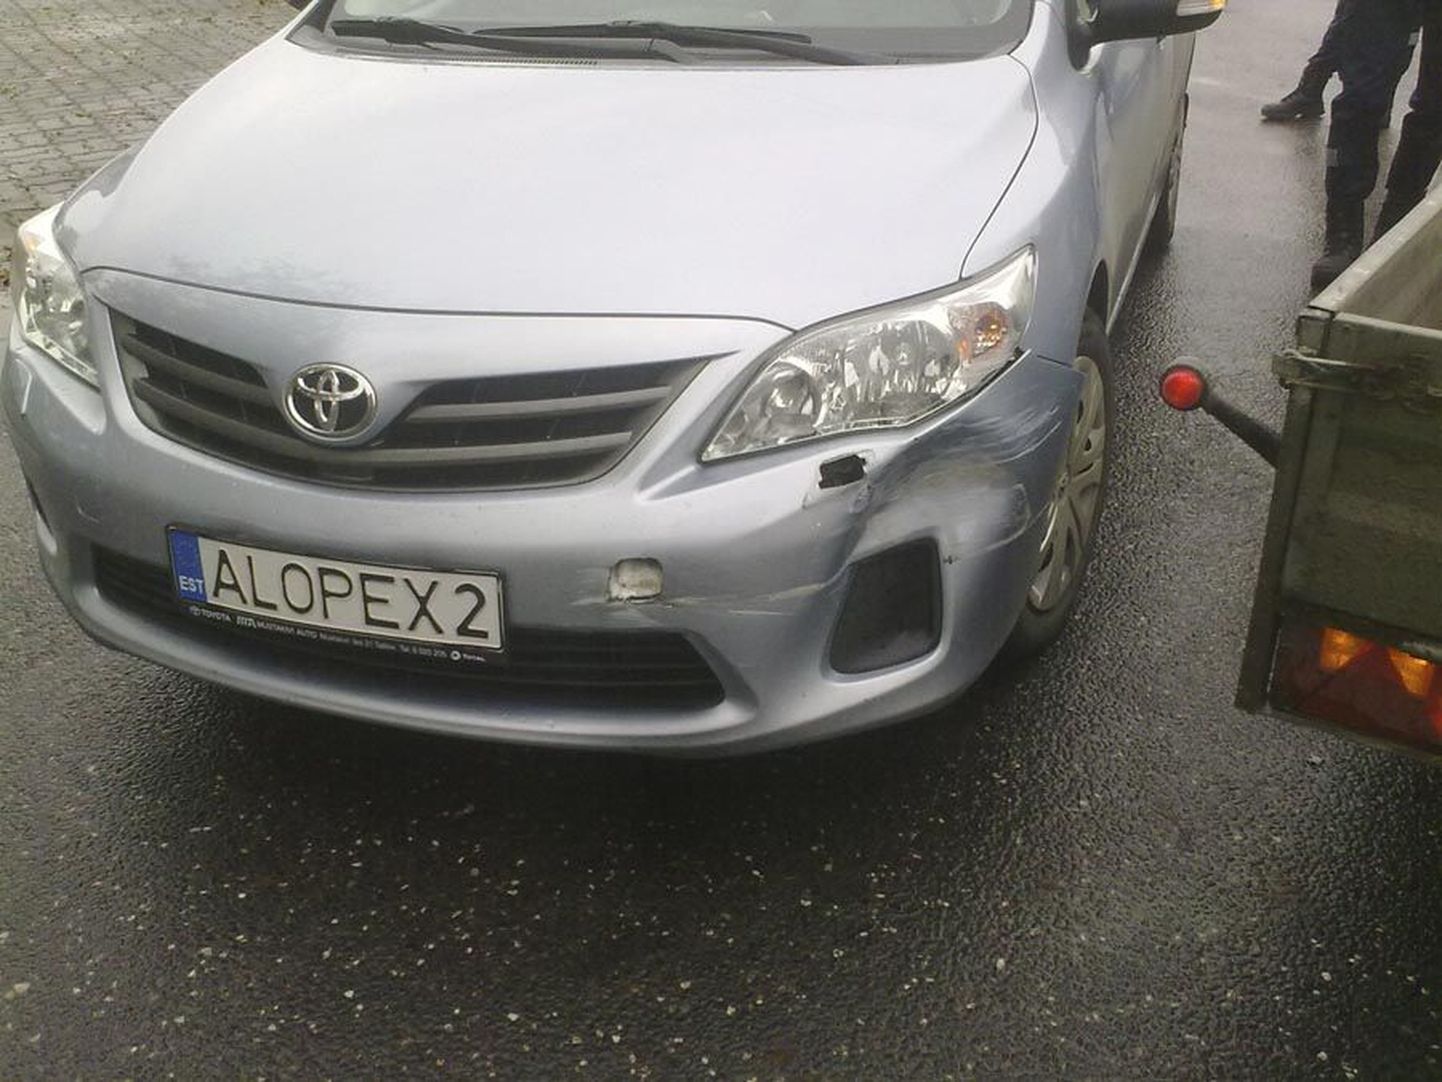 Alopexi autokooli Toyota Corolla sai avariis kergeid kahjustusi. Foto on tehtud sündmuskohal.